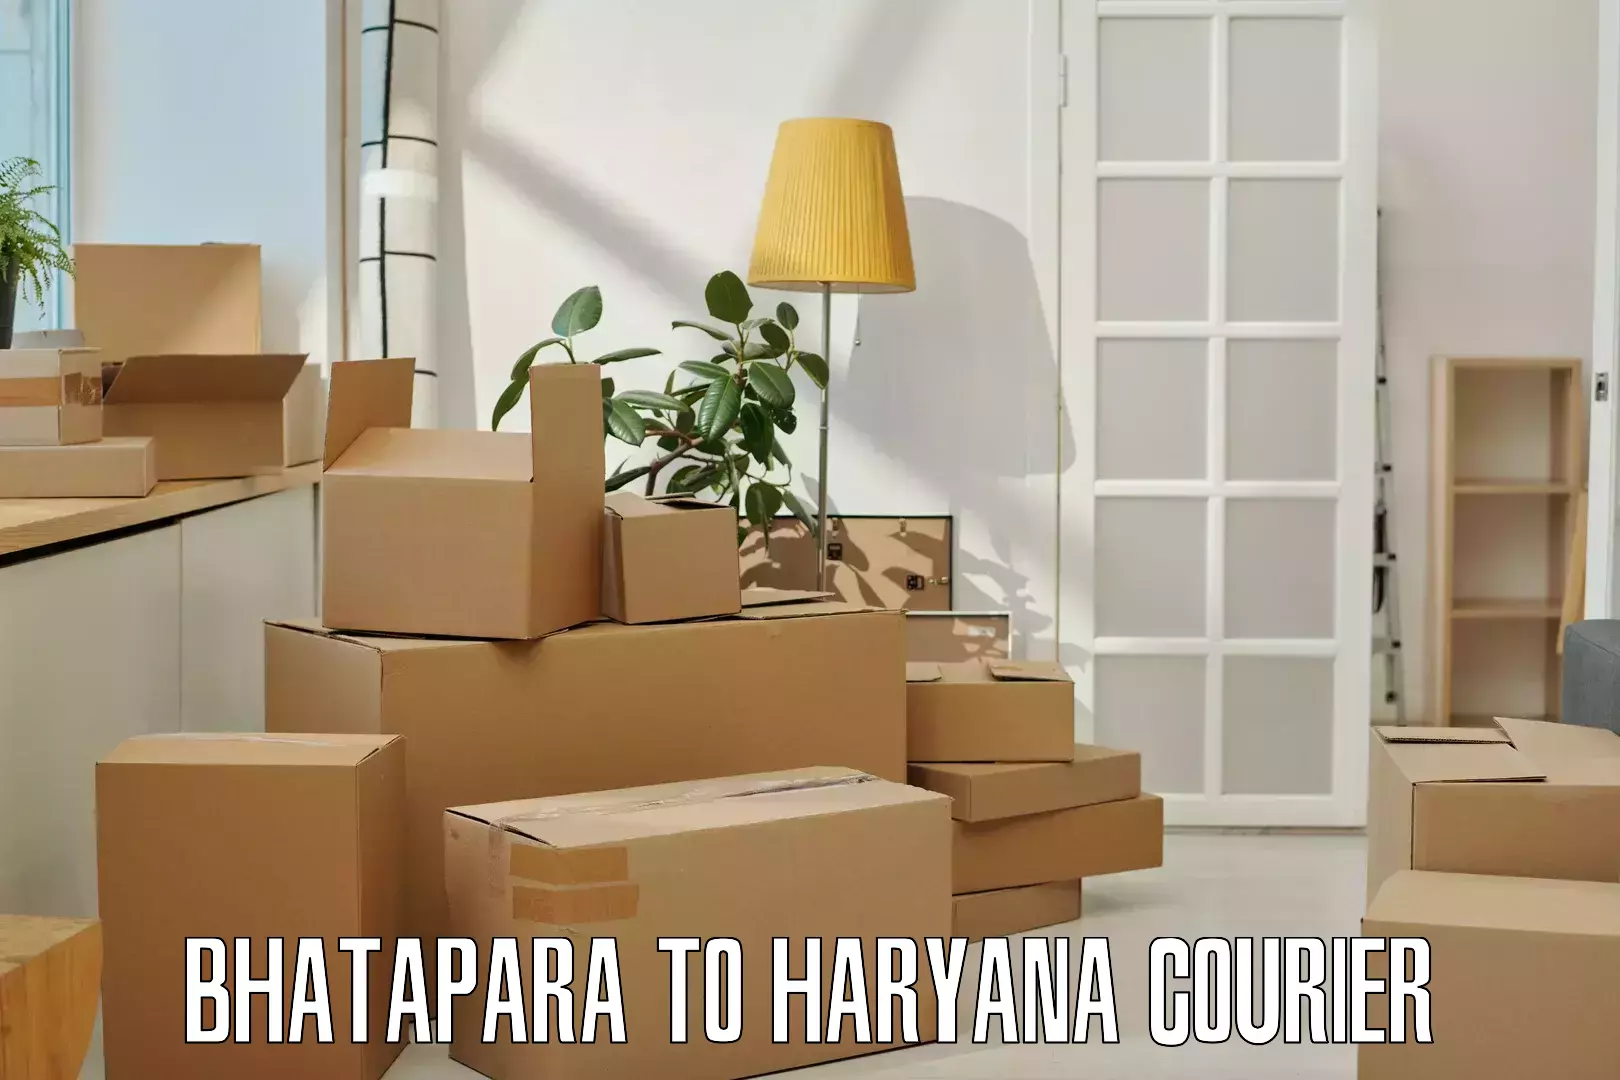 Efficient shipping platforms Bhatapara to Gurugram